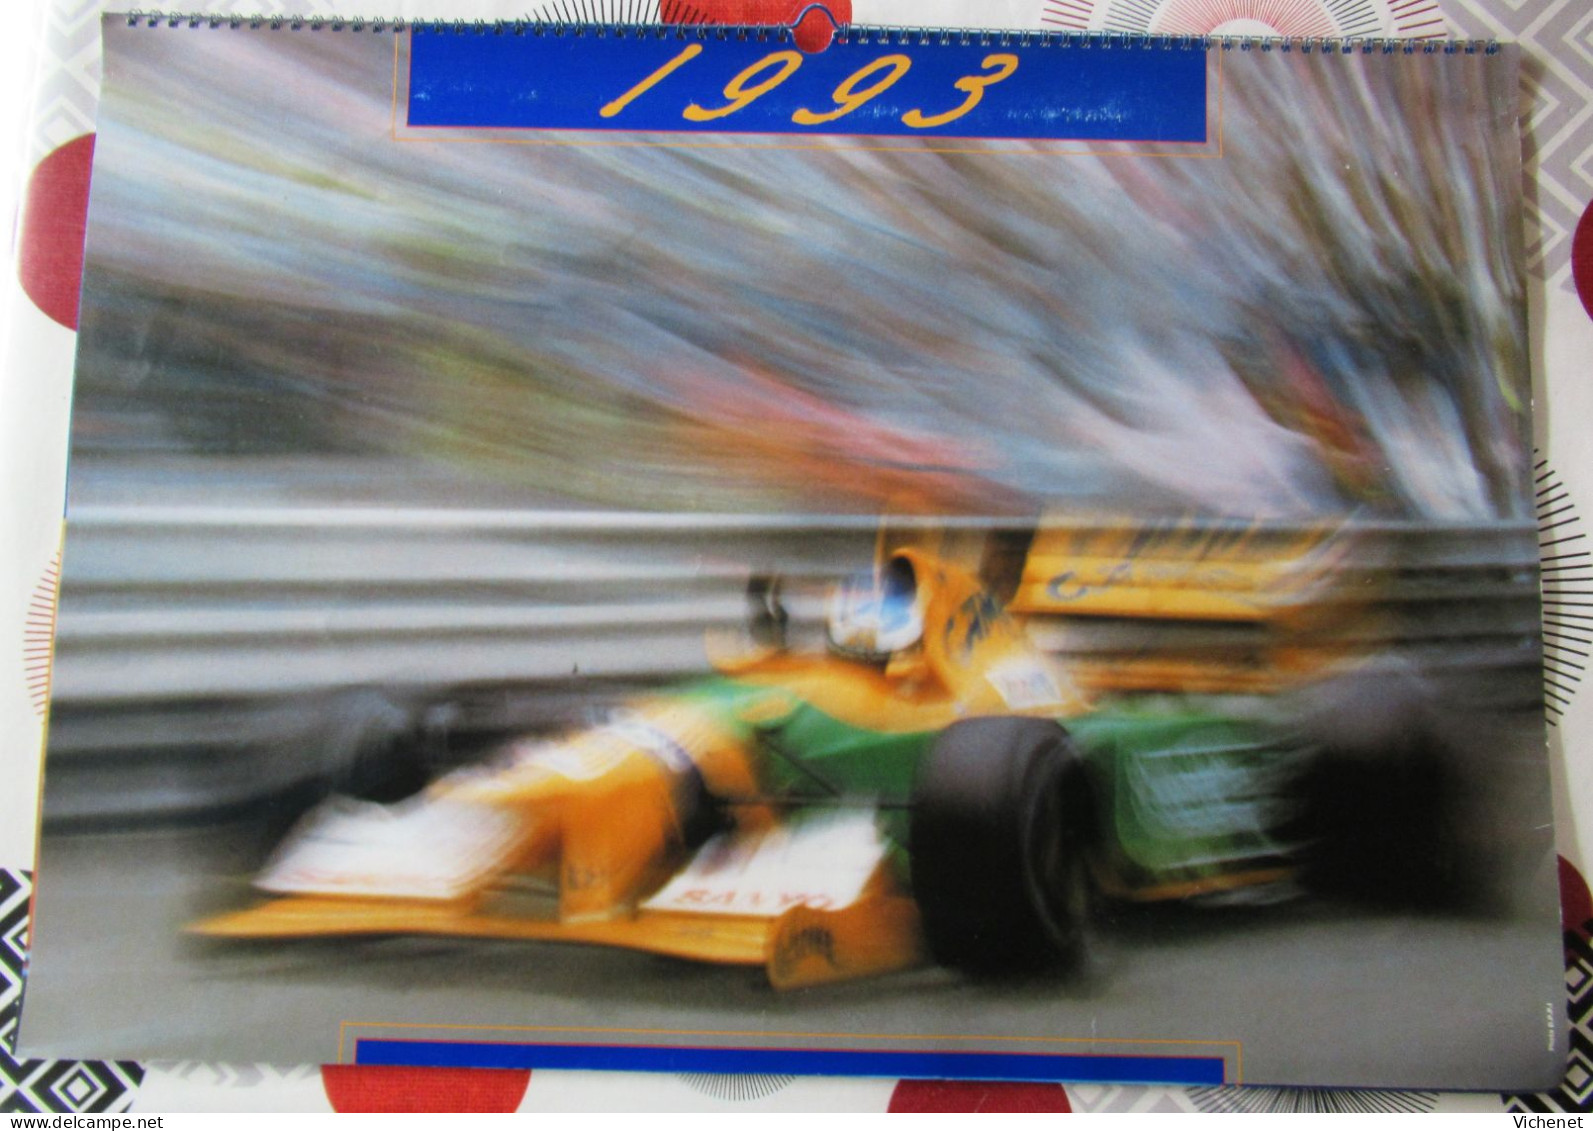 Camel Formula 1 - 1993 - 60 X 42 Cm - Schumacher - Mansell - Grand Format : 1991-00